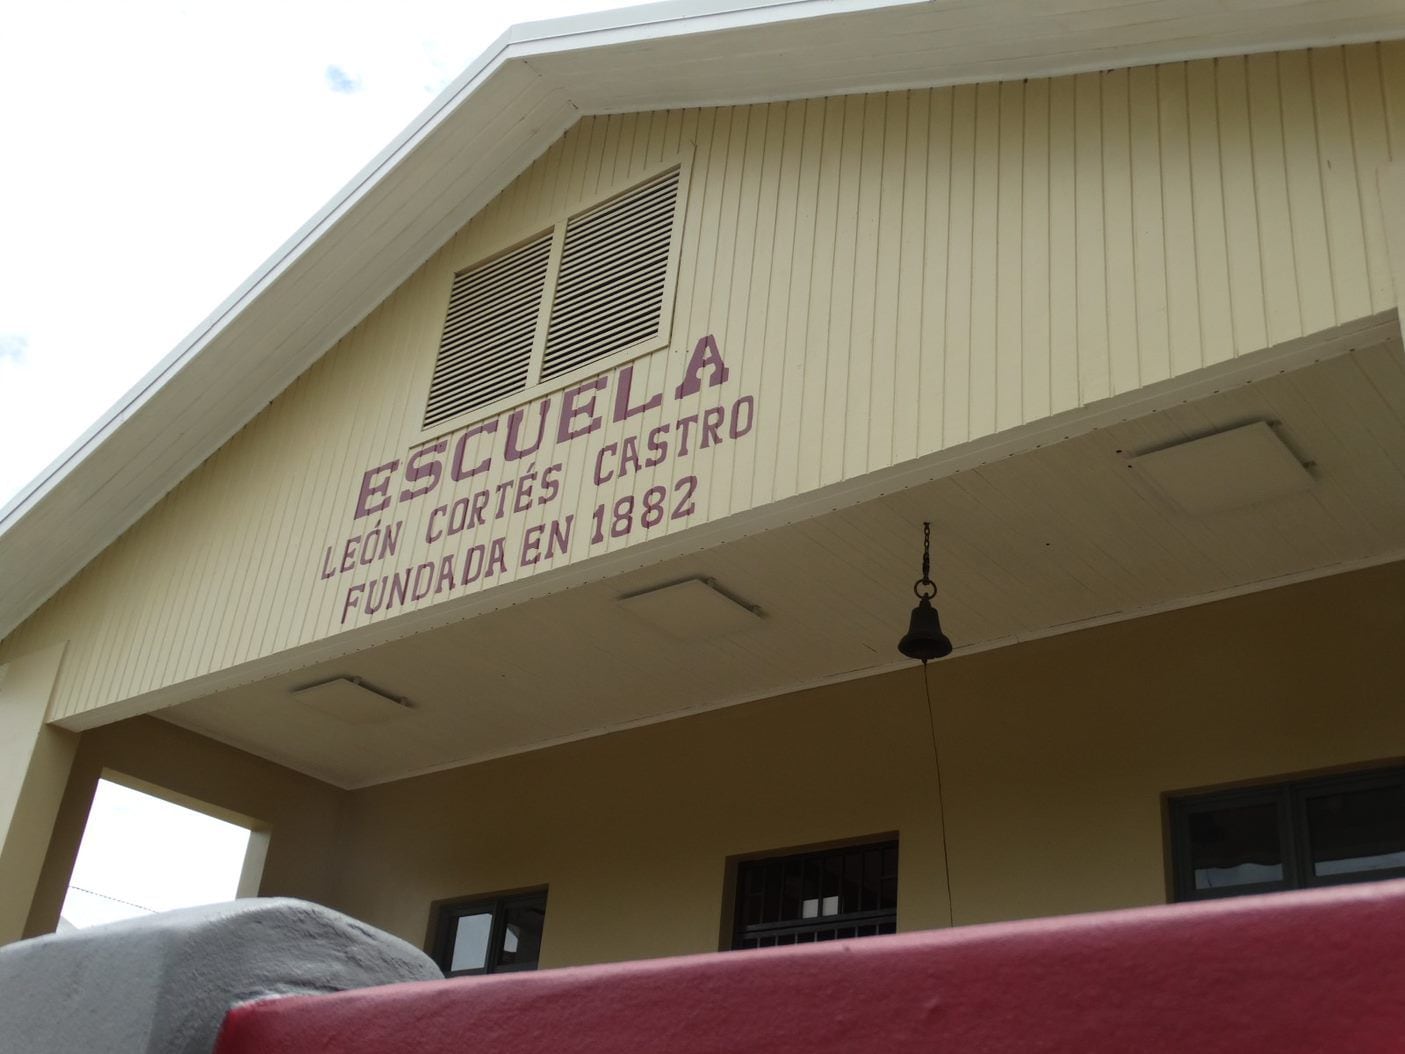 La Escuela León Cortés Castro, en Tarrazú, estuvo cerrada durante varios porque sus condiciones no permitían albergar personas.

Fotografía: Centro de Patrimonio